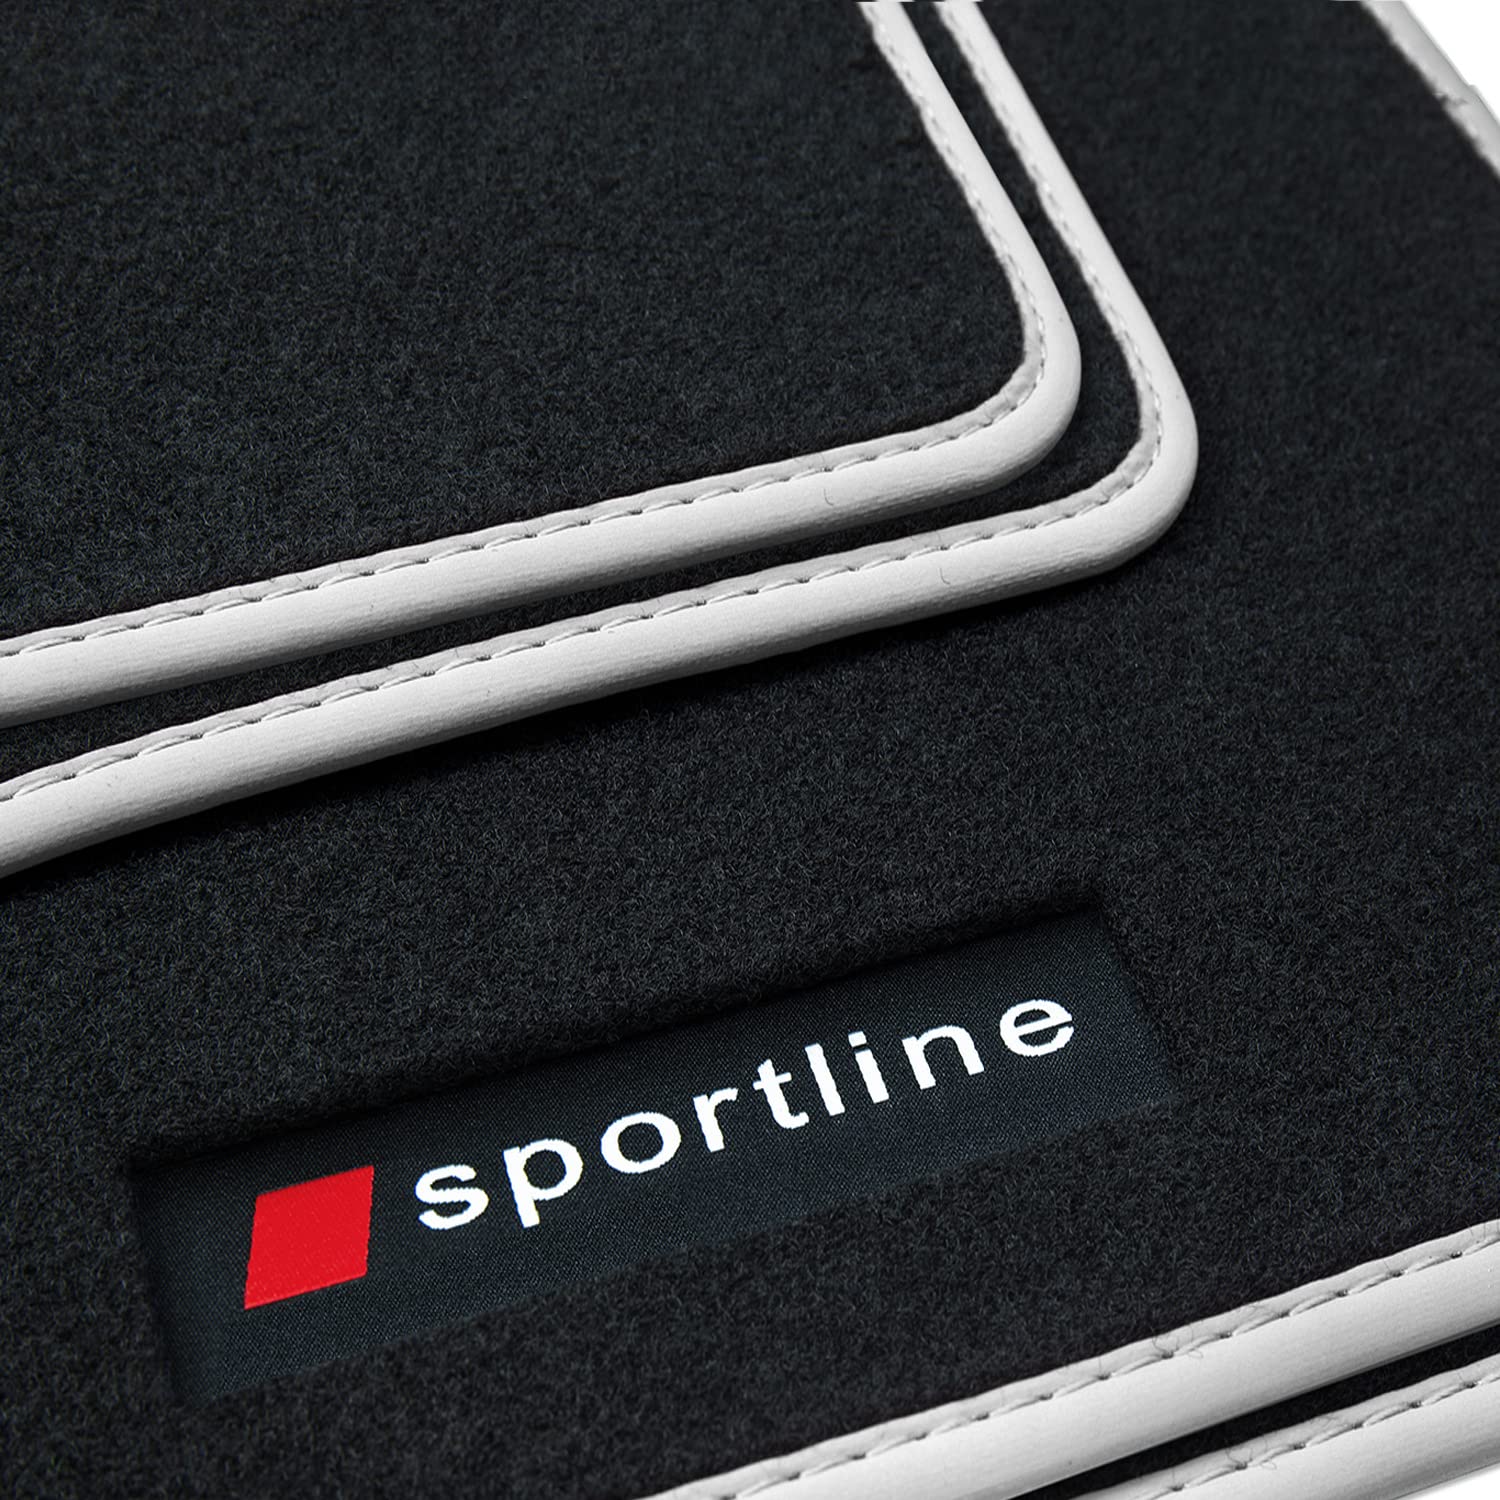 teileplus24 PV318 Fußmatten Sportline Design kompatibel mit Audi A6 C8 2018-, Bandeinfassung:Silber von teileplus24